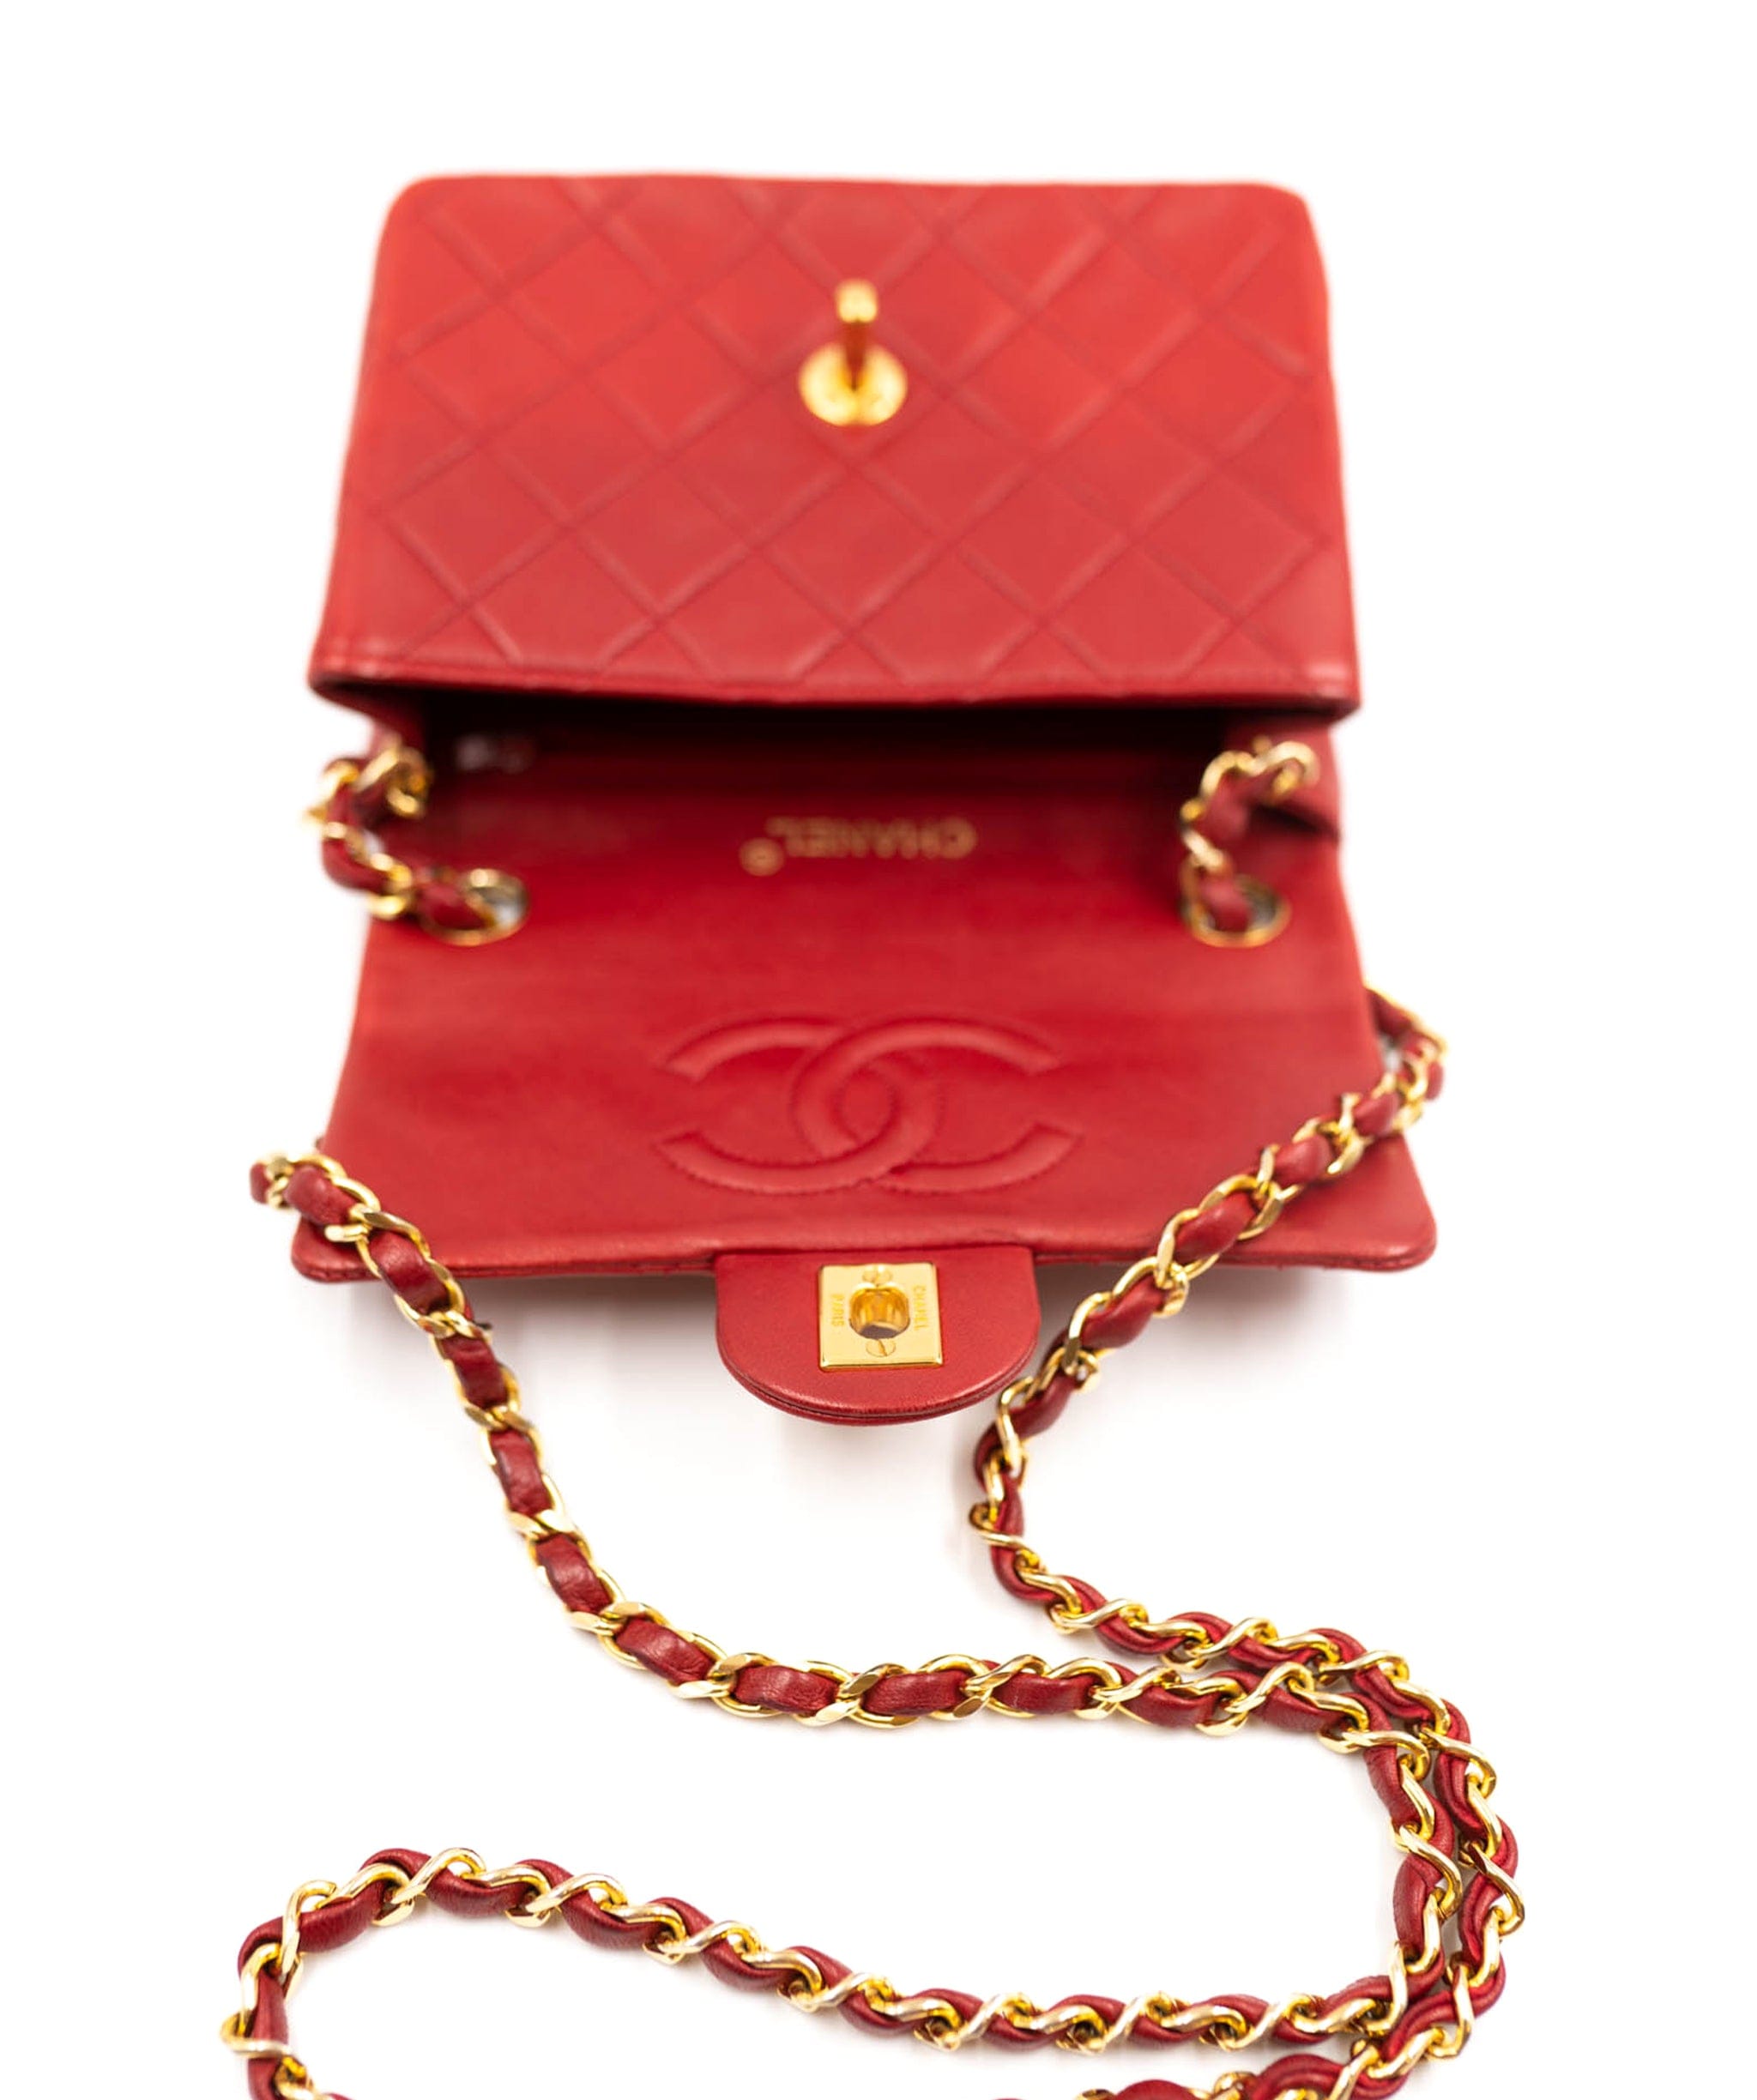 Chanel Rare Chanel red mini square flap UKL1007